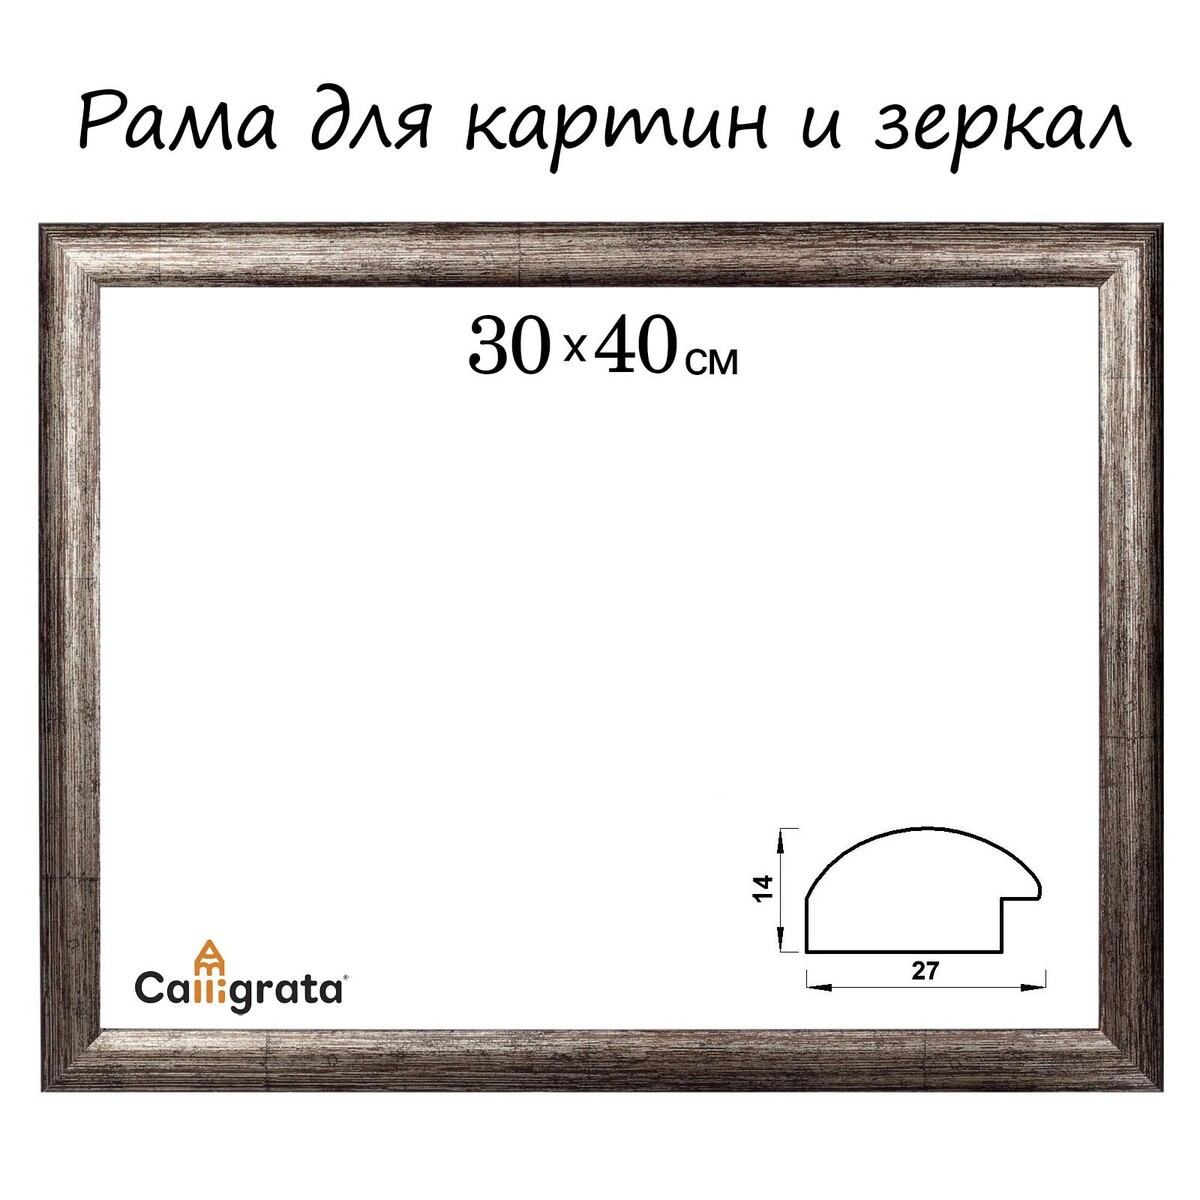 Рама для картин (зеркал) 30 х 40 х 2,7 см, пластиковая, calligrata 6472, цвет коричневая-серая рама для картин зеркал 30 х 40 х 2 7 см пластиковая calligrata 6472 коричневая серая